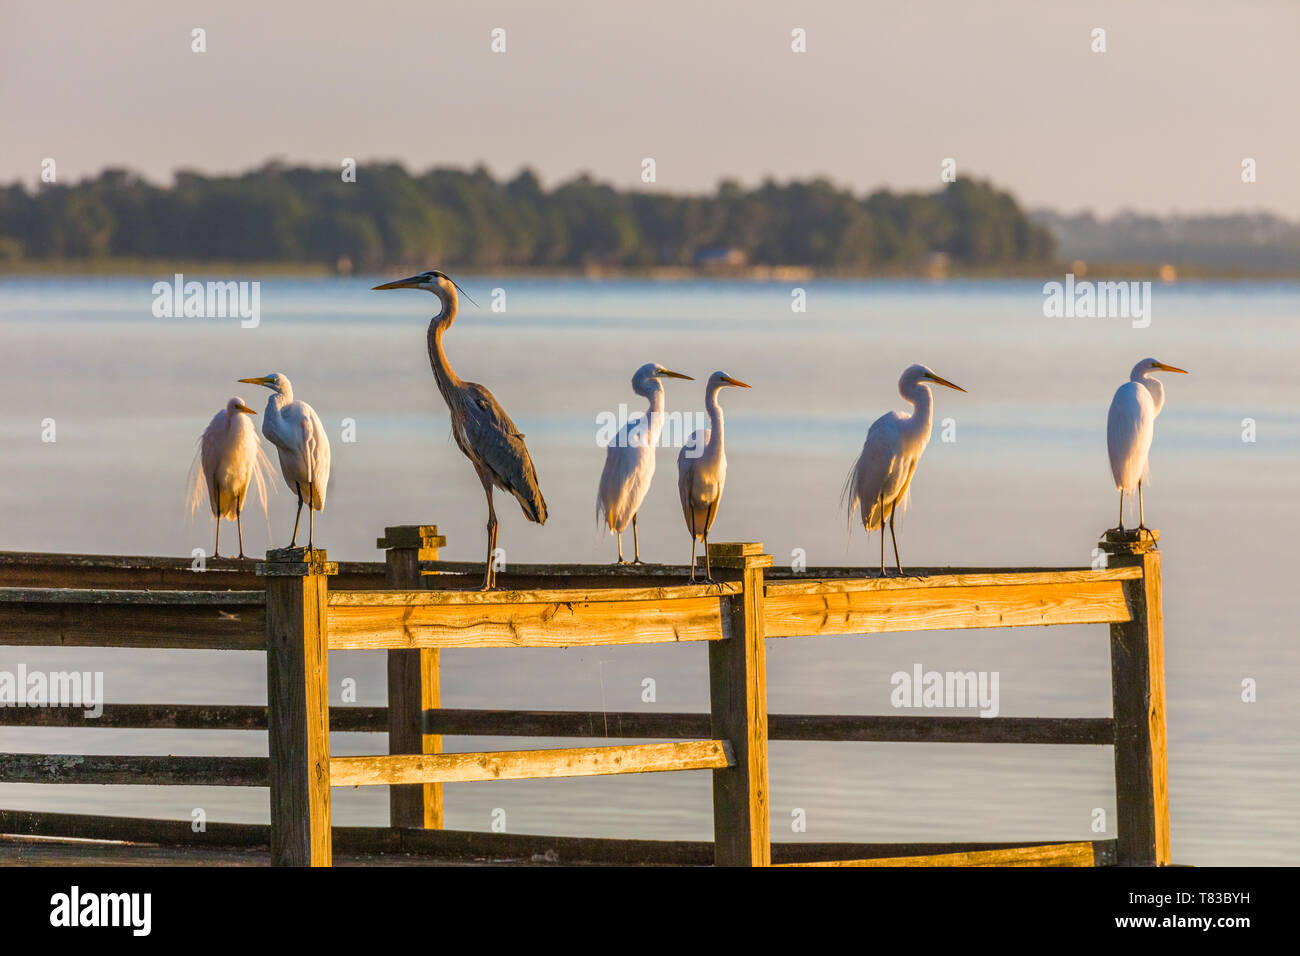 Les oiseaux sur les garde-corps du quai sur le lac de Pierce à Capharnaüm Capharnaüm Inn Lakeside Lodge Retreat Centre, à Lake Wales Polk Comté Floridda dans l'Unite Banque D'Images